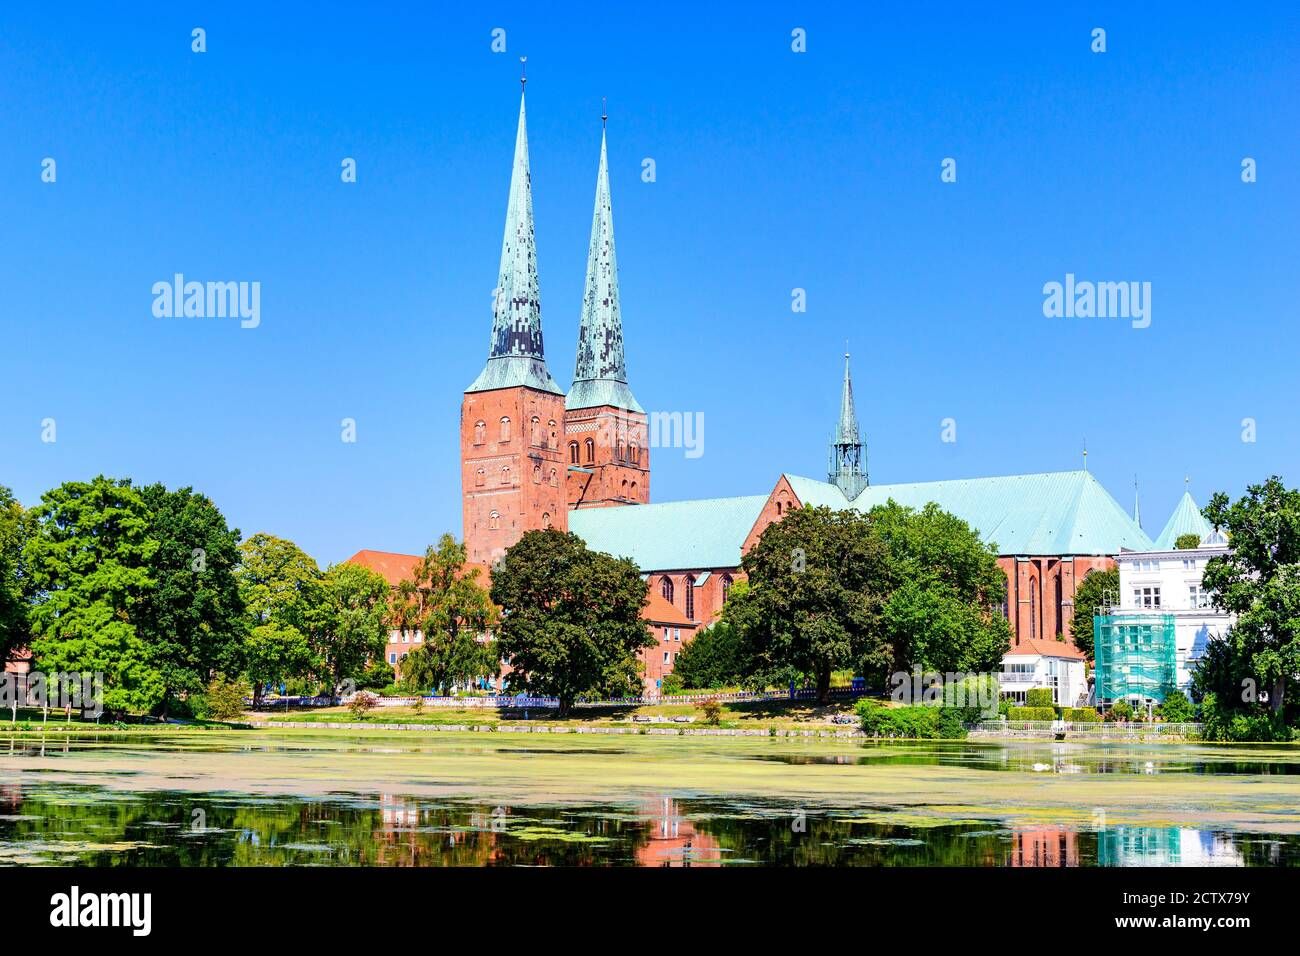 Eglise catherdale (Dom) avec un lac, ciel bleu à Lubeck (Lübeck), Schleswig-Holstein, Allemagne Banque D'Images